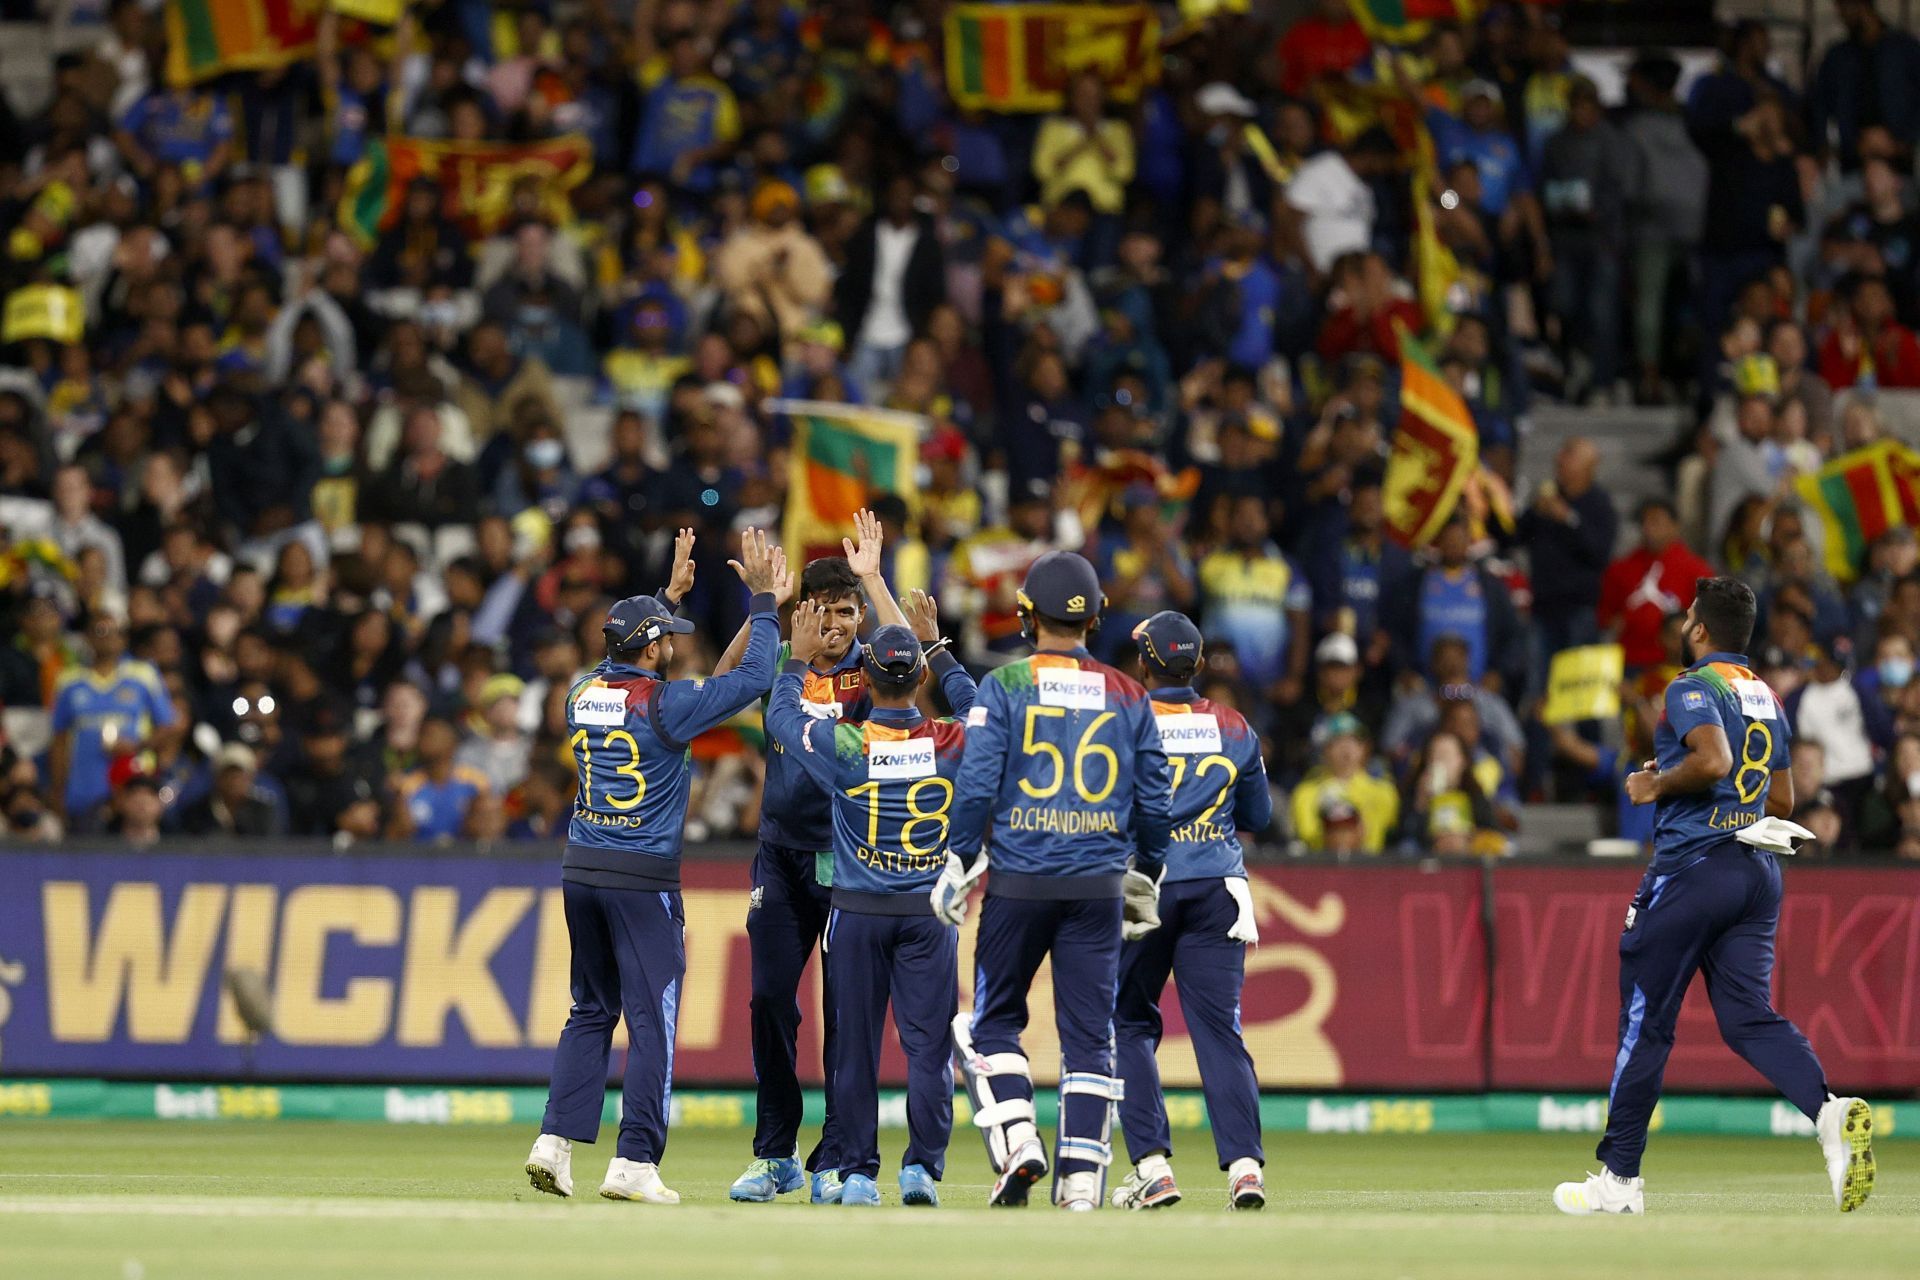 Australia v Sri Lanka - T20 Series: Game 4 (Image Courtesy: Getty Images)